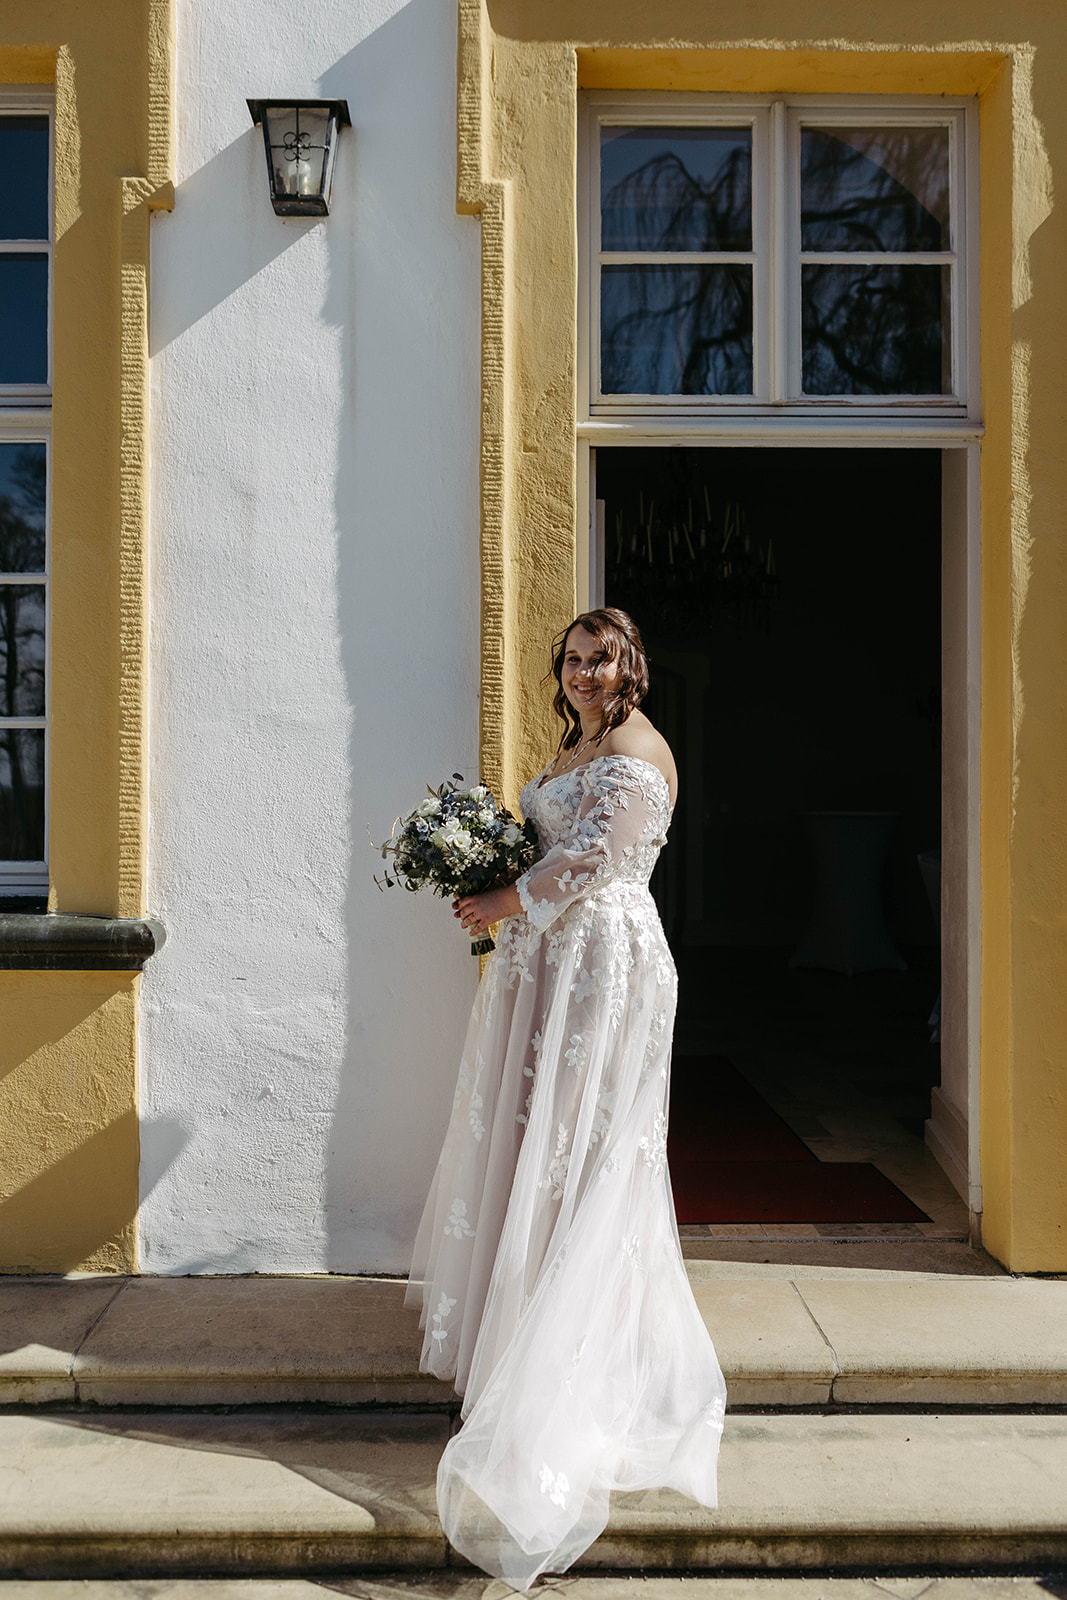 Anmutiges Portrait: Die Braut strahlt vor der beeindruckenden Kulisse des Schlosses Jägersburg